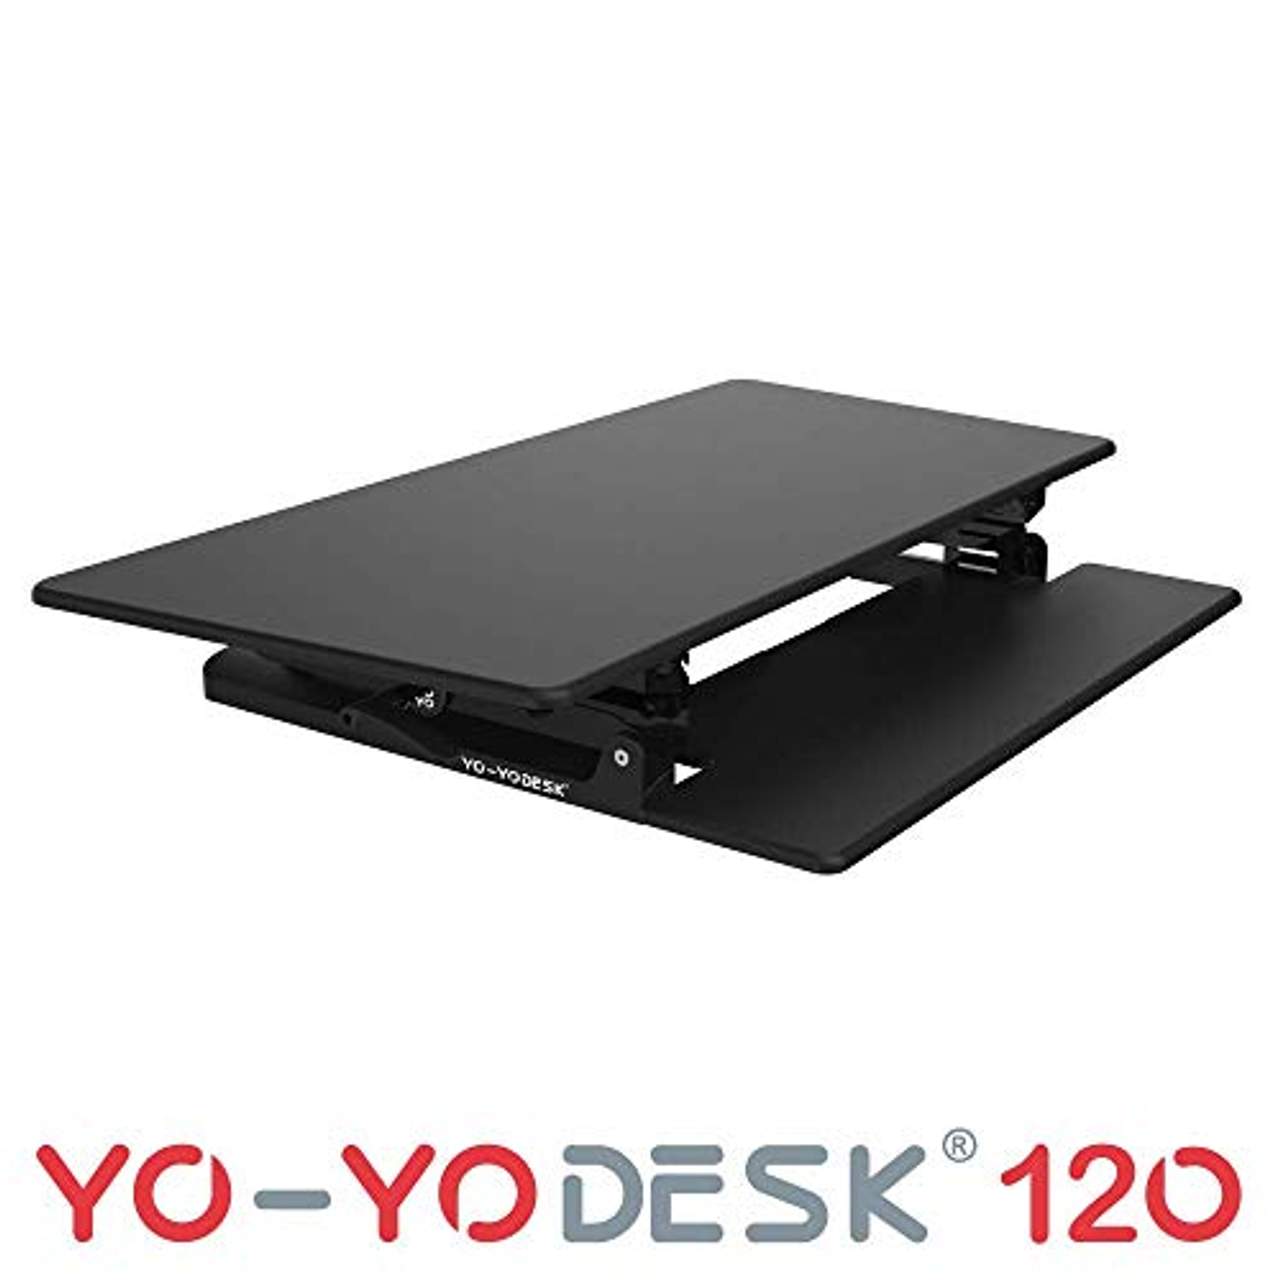 Yo-Yo DESK 120 Stehpult für Ihren ergonomischen Steharbeitsplatz